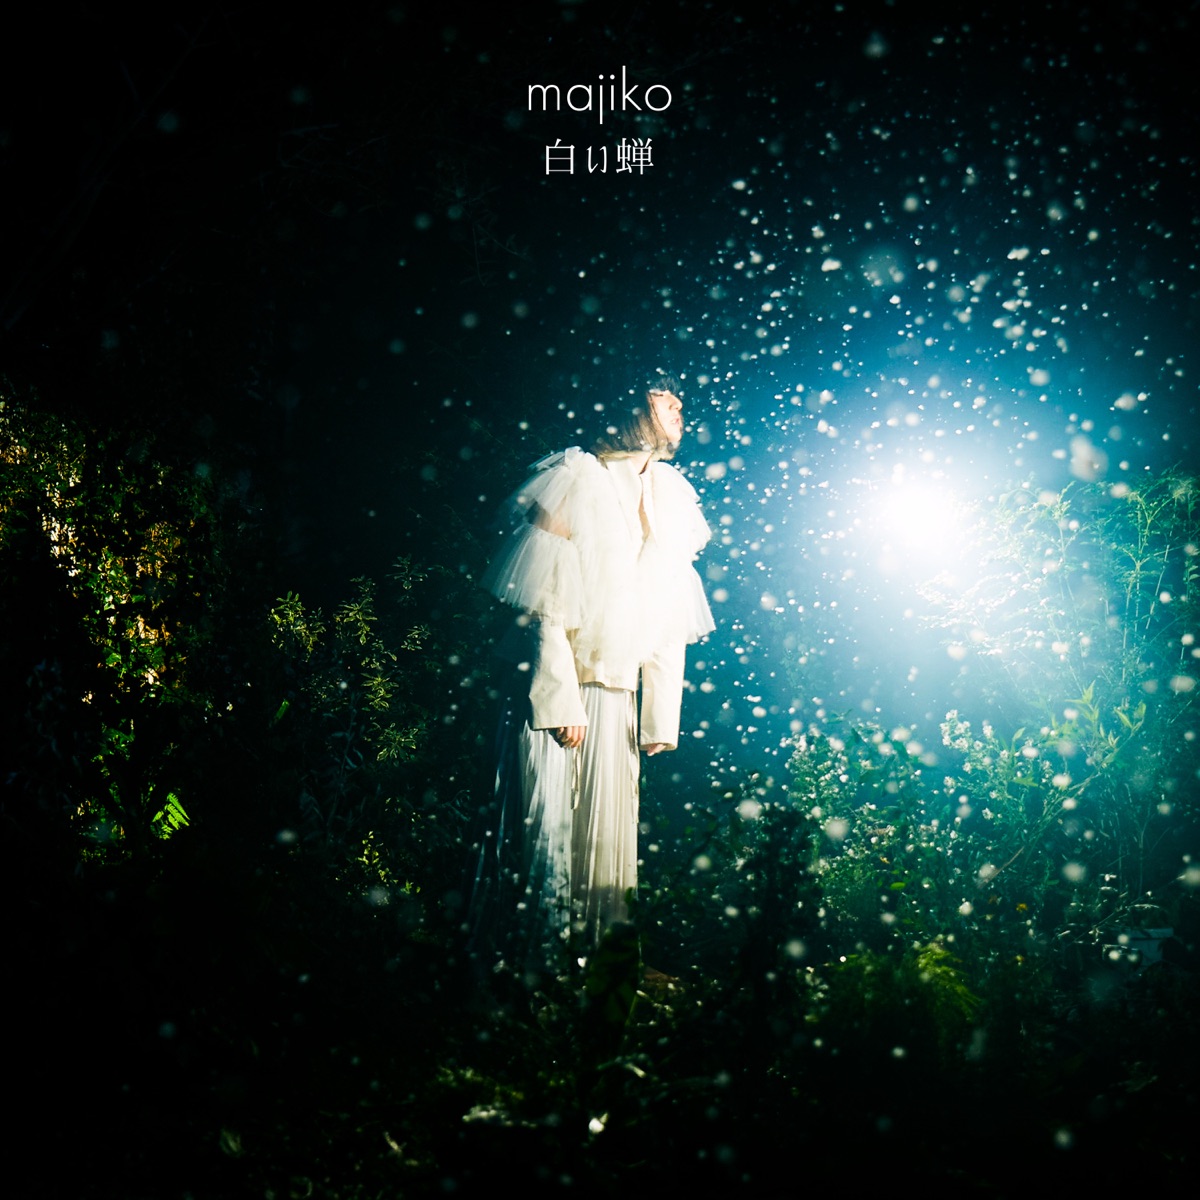 『majiko - 神様でもあるまいし』収録の『世界一幸せなひとりぼっち』ジャケット